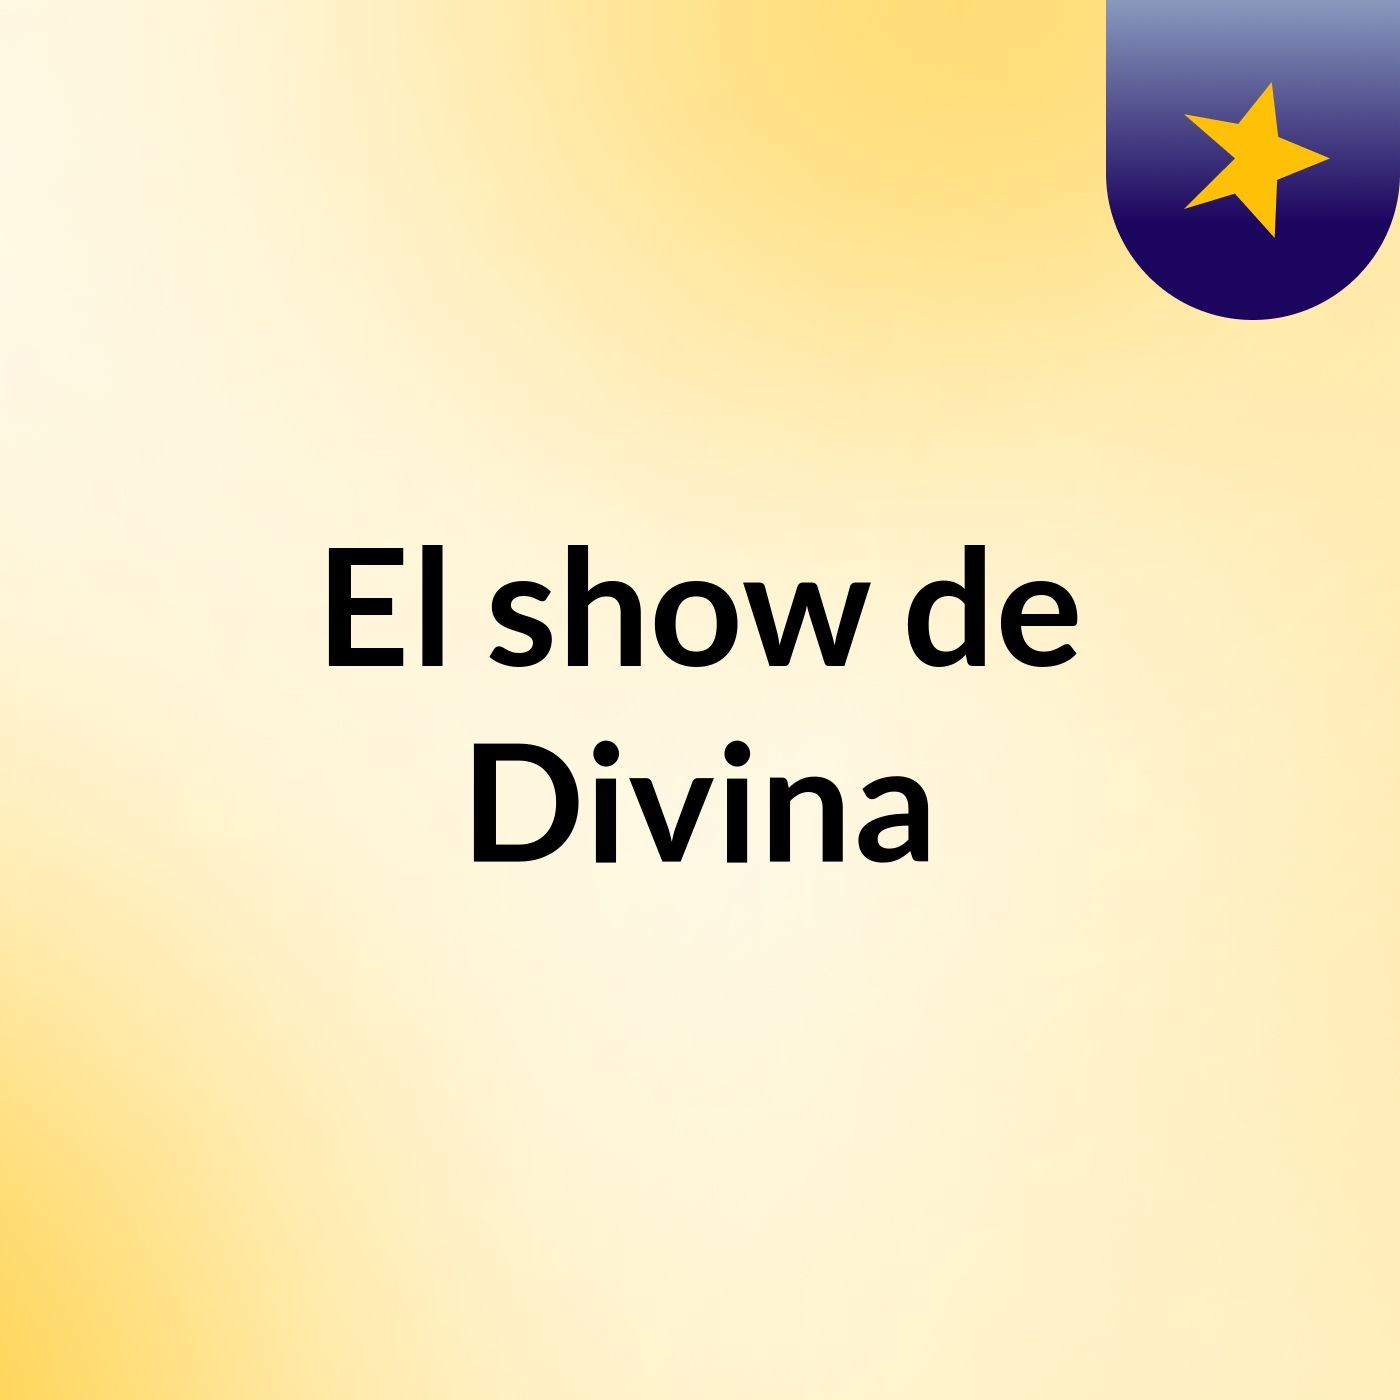 El show de Divina